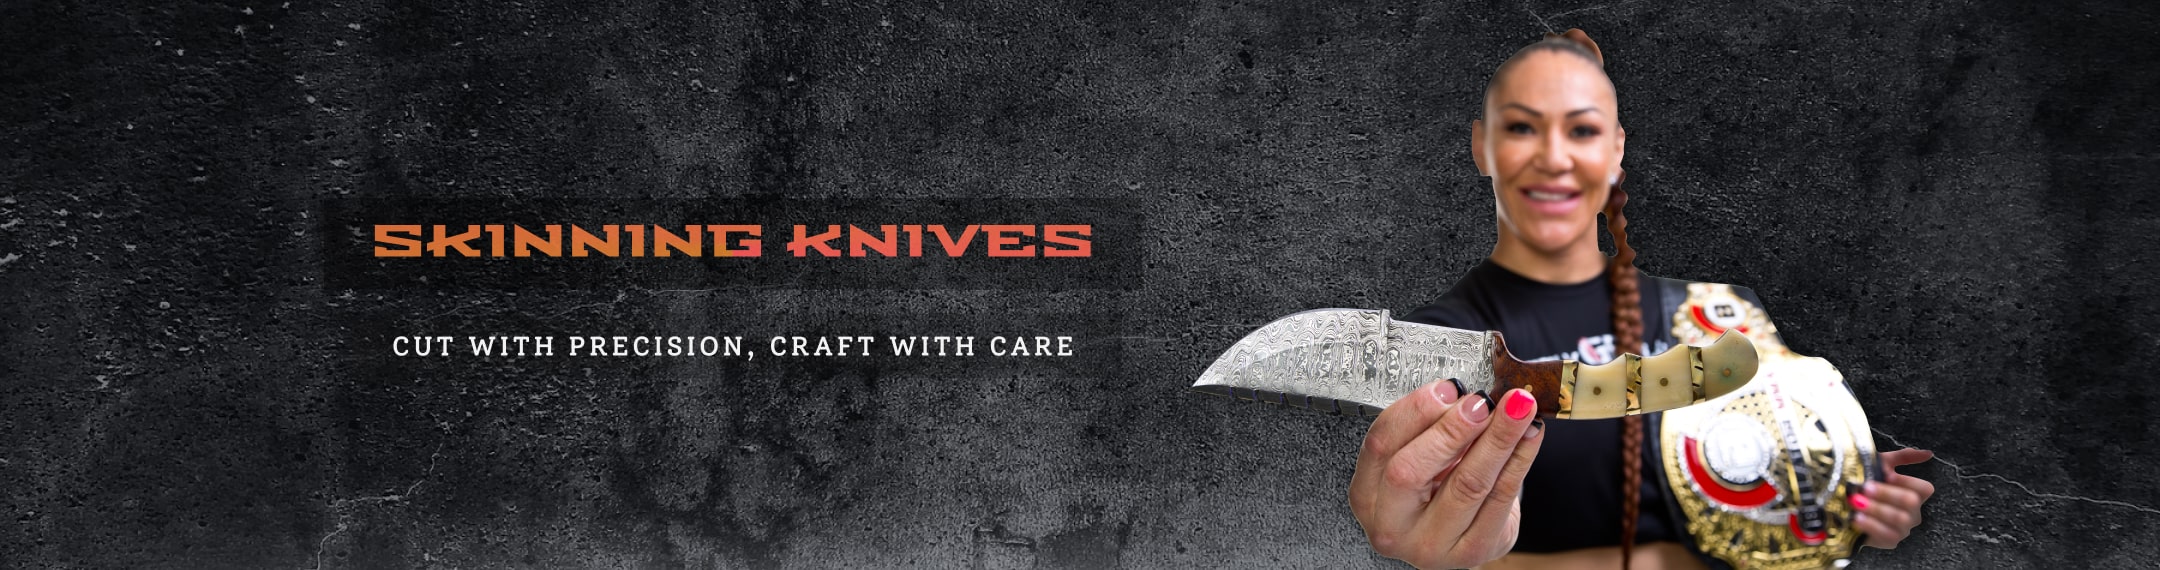 Skinning knives